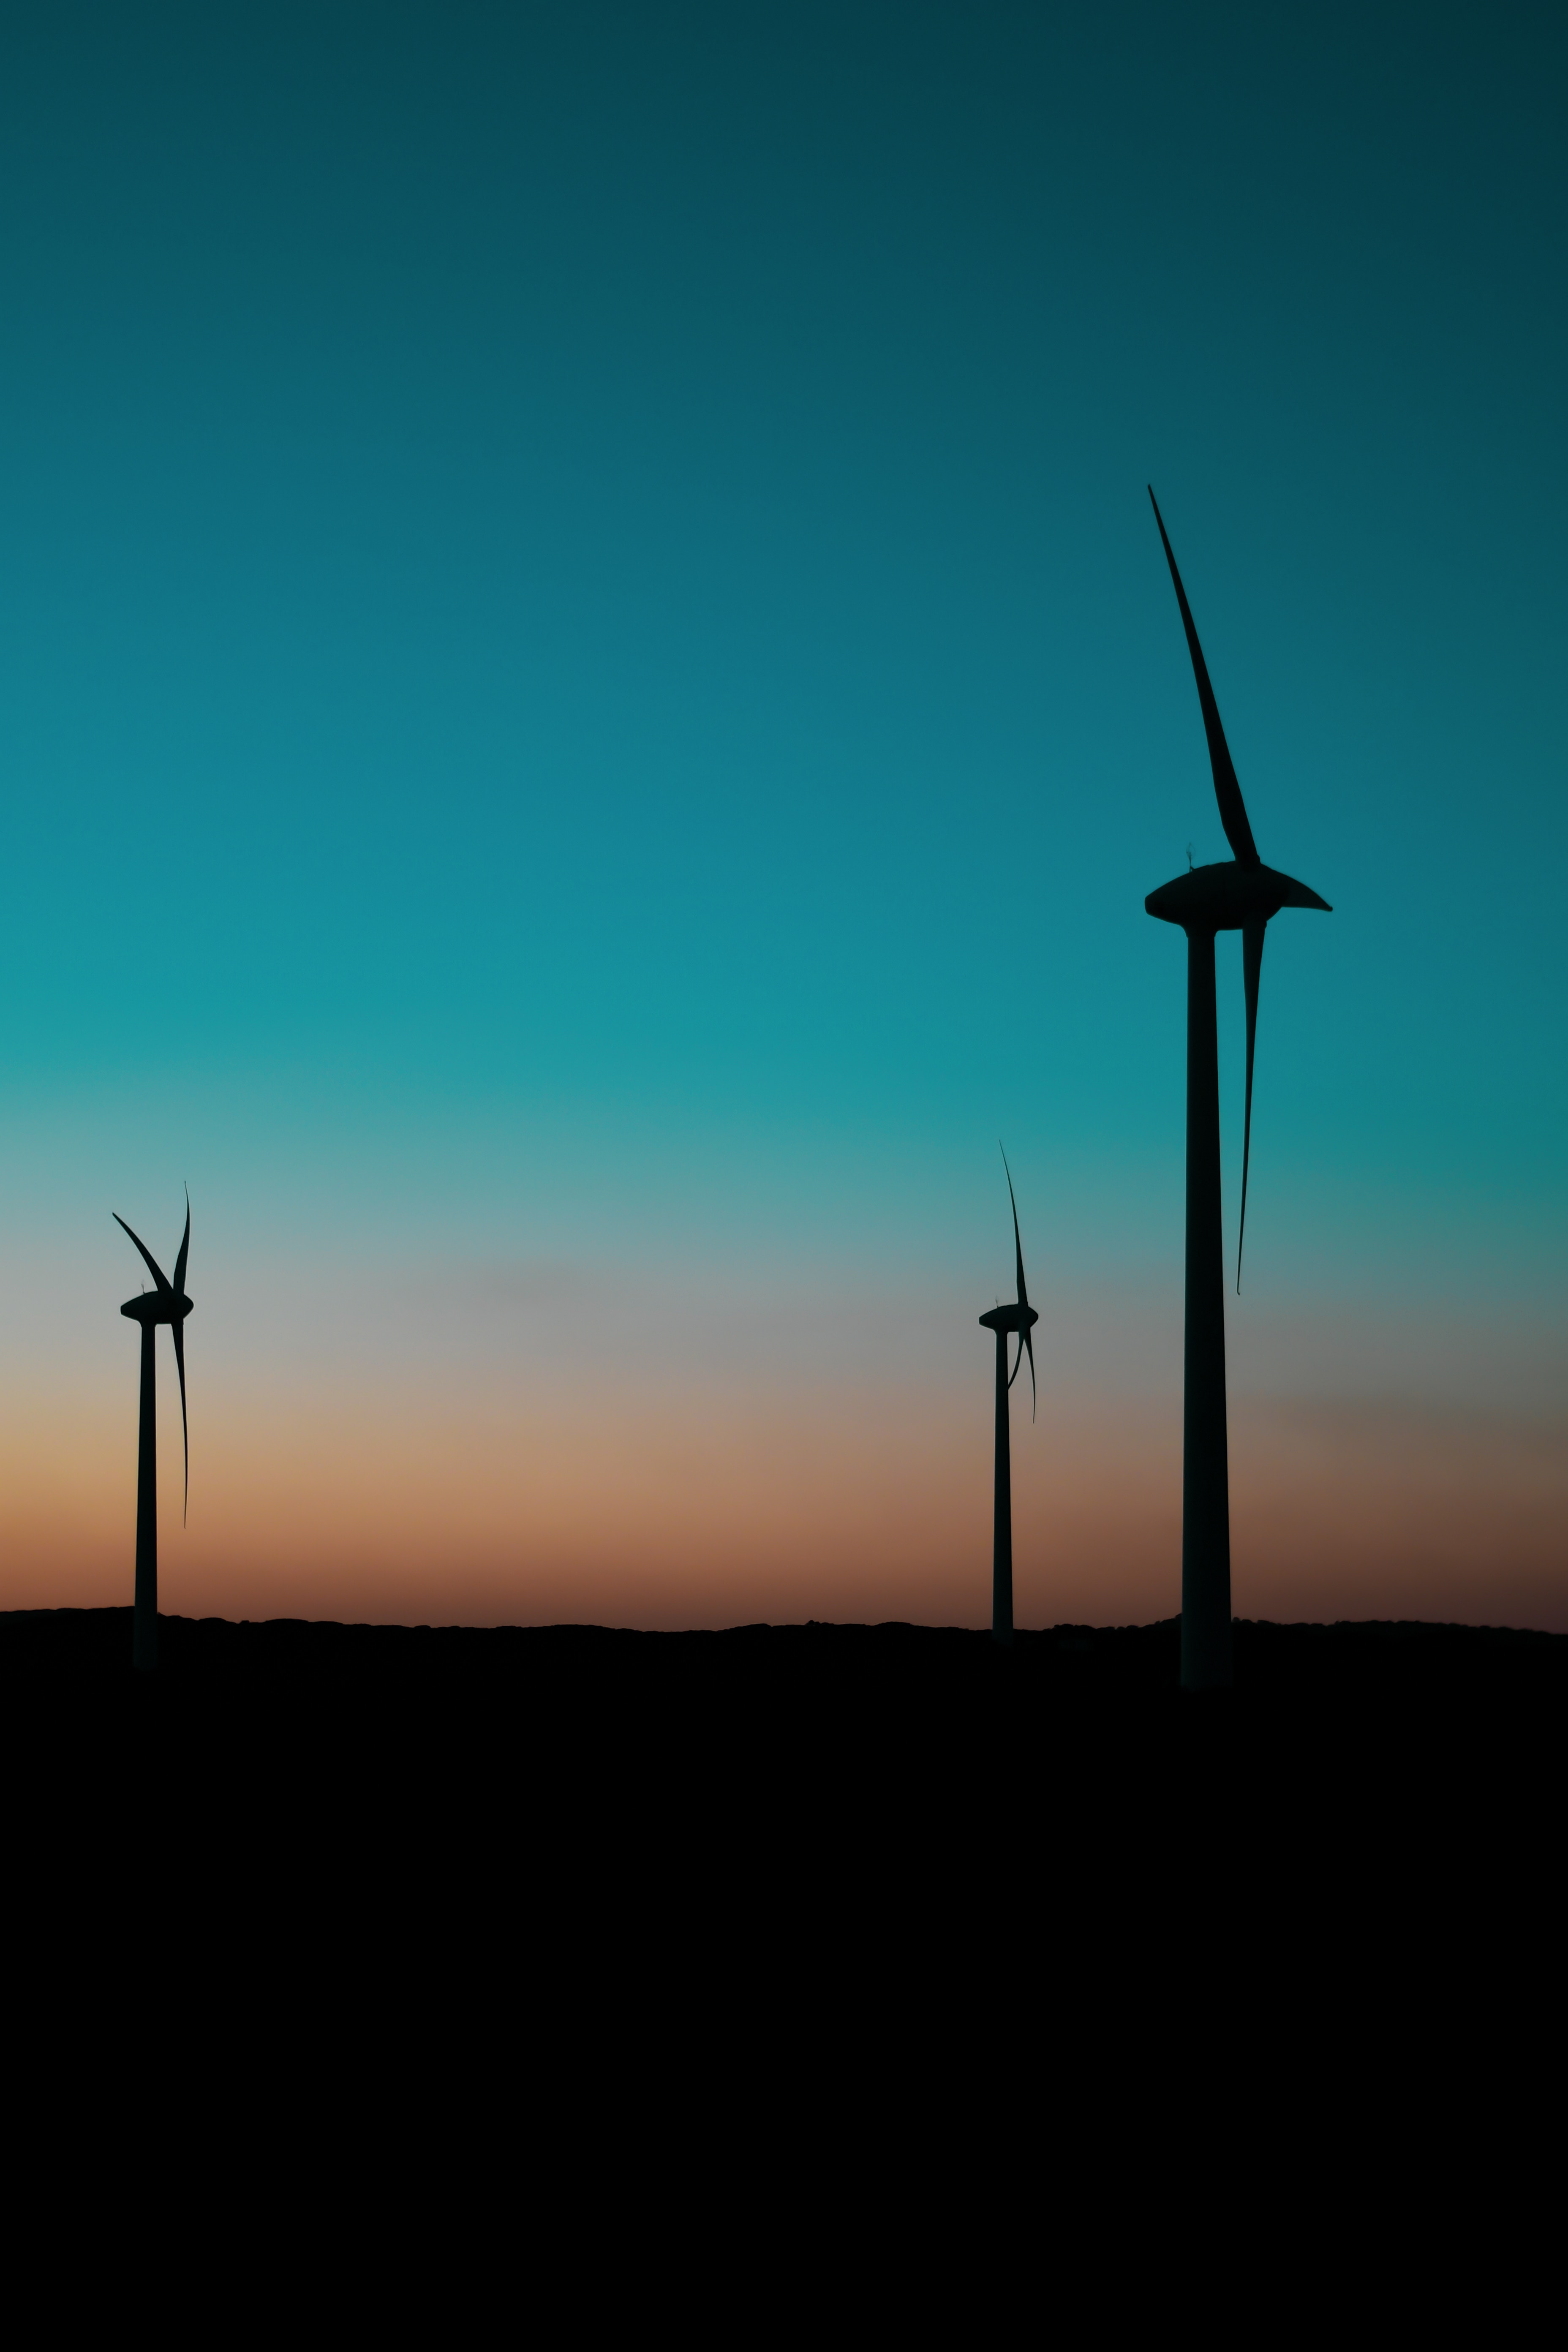 dark, twilight, dusk, pillars, posts, wind power plant, turbines, turbine, blades